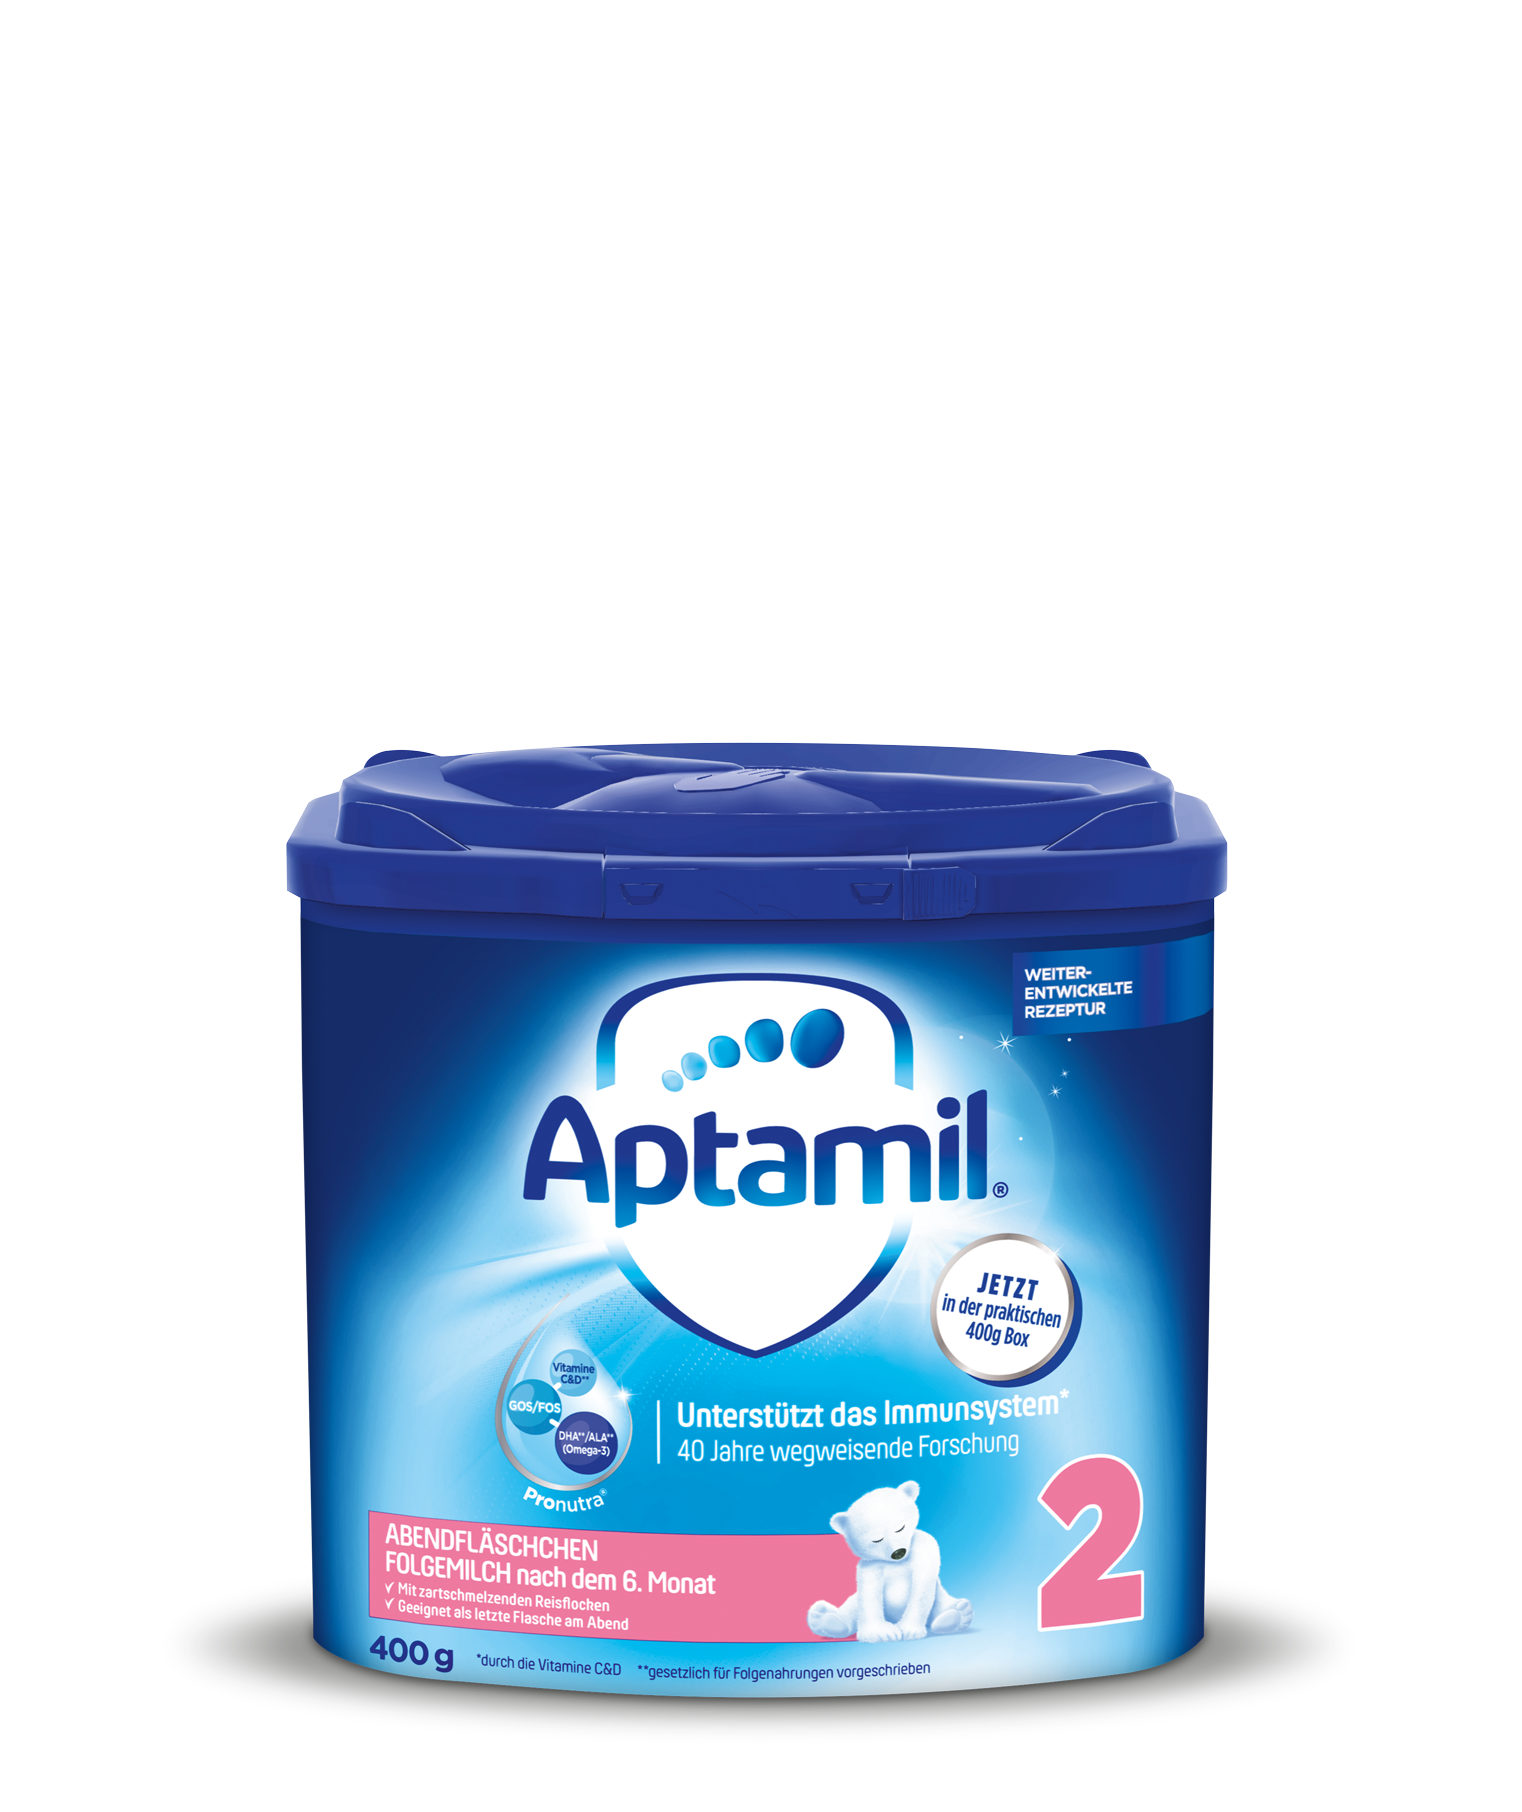 Aptamil produkte unterschiede